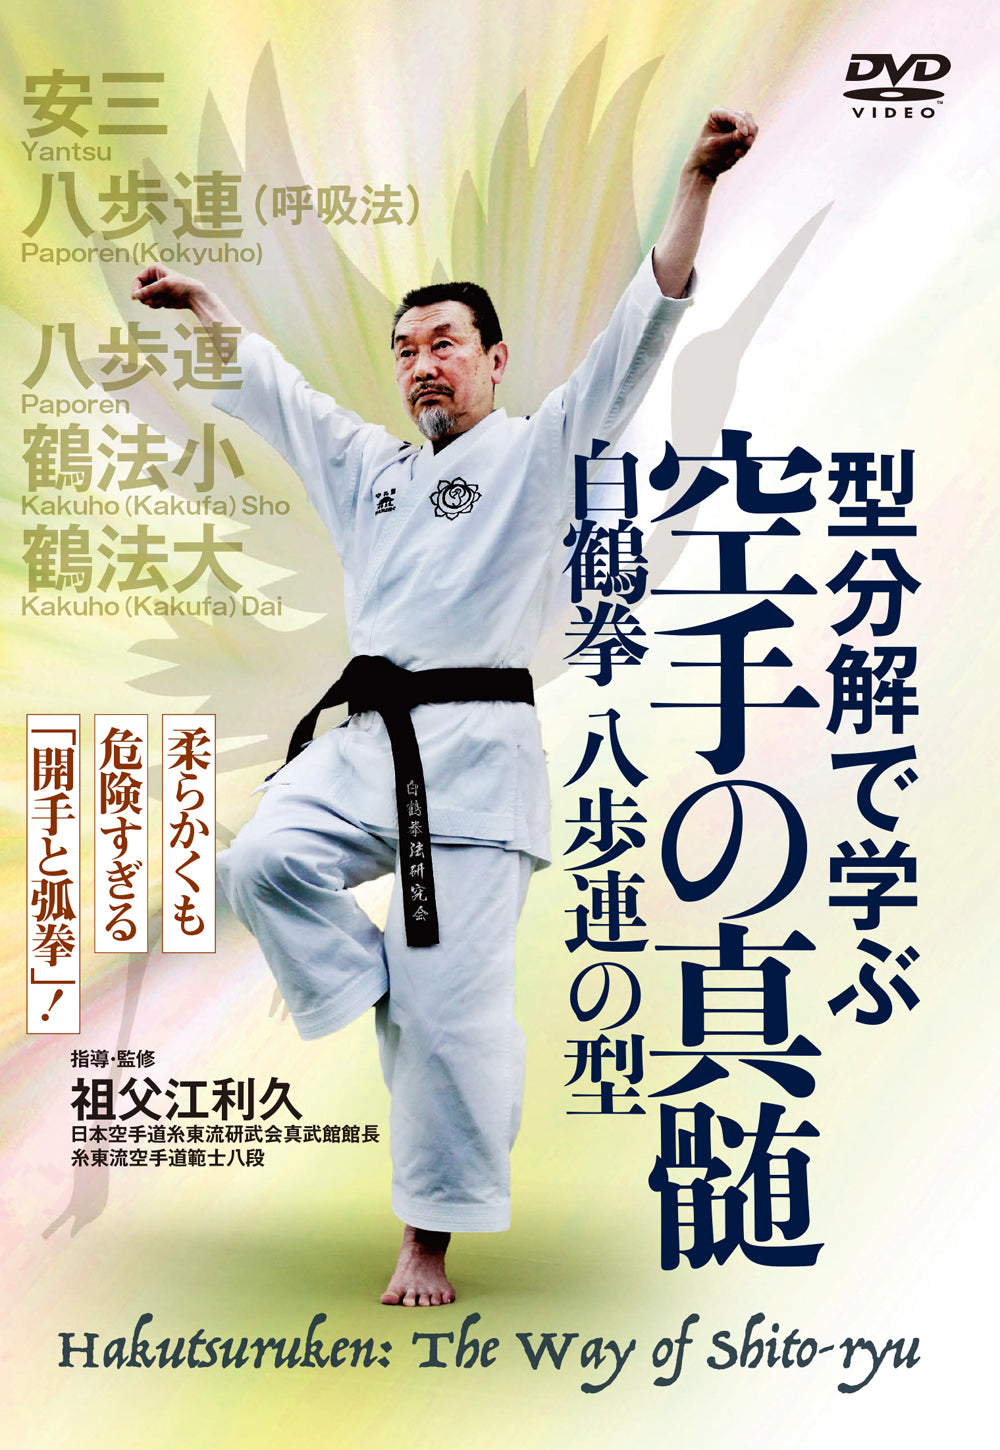 Hakutsuru Ken (White Crane) DVD 2: Way of Shito Ryu by Sobue Toshihisa